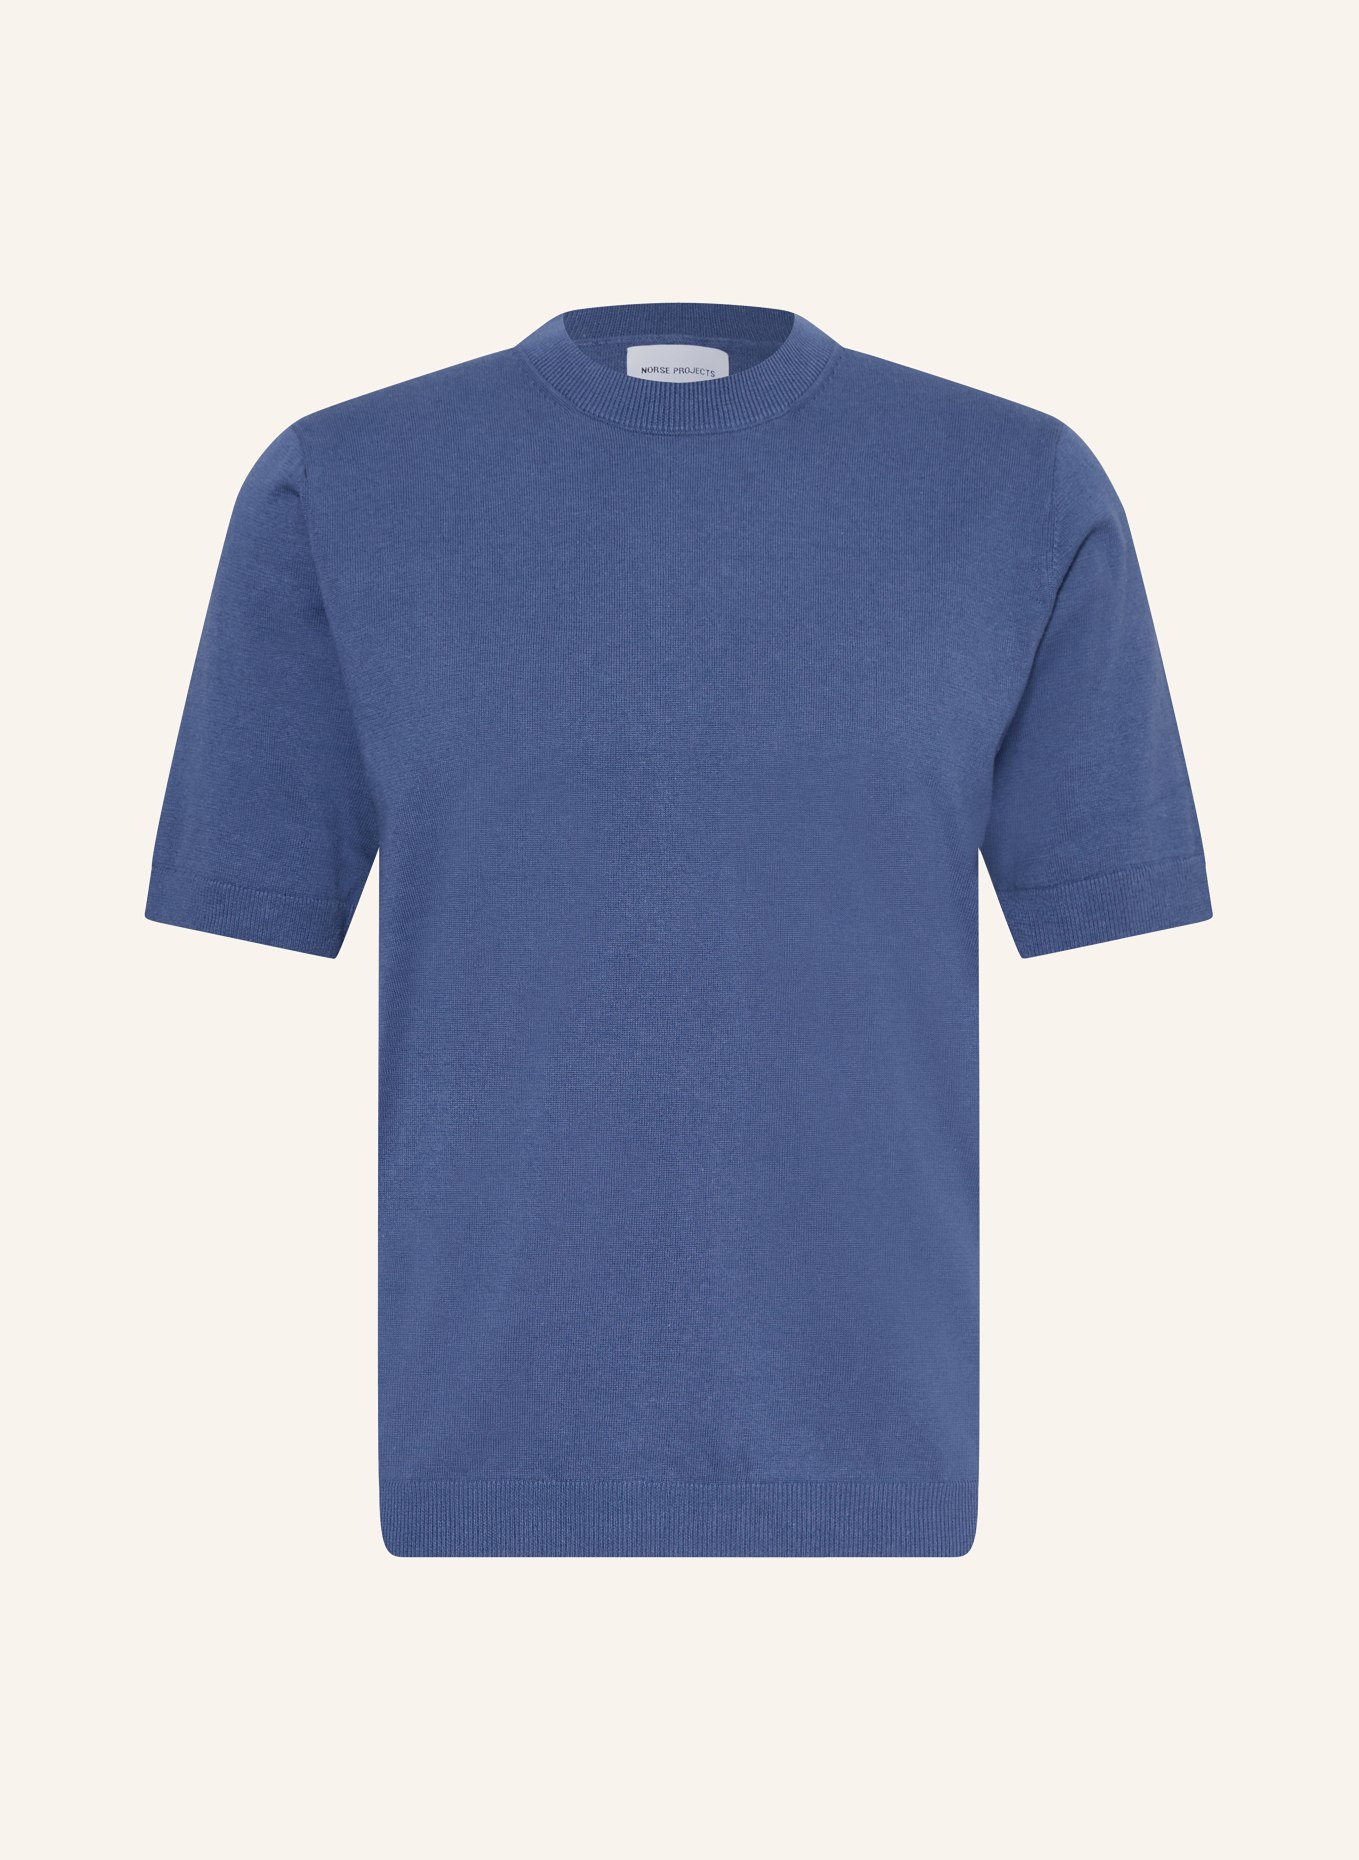 NORSE PROJECTS Strickshirt RHYS mit Leinen, Farbe: BLAU (Bild 1)